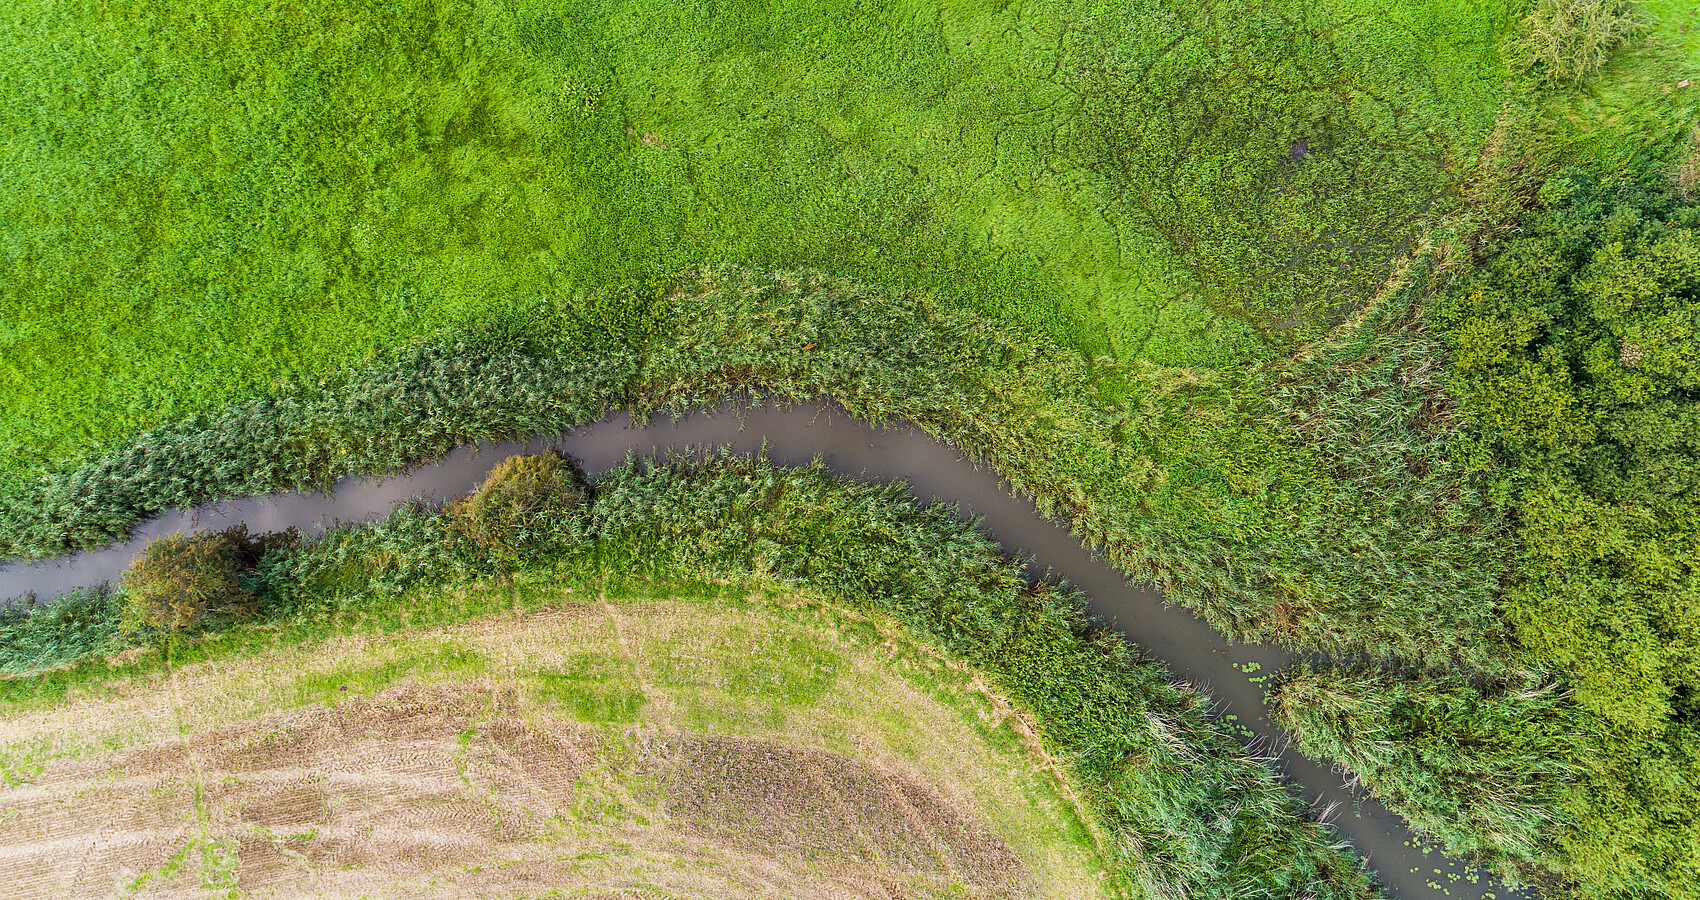 Drohnenaufnahme eines Gewässerverlaufs. Man sieht aus der Vogelperspektive einen Flußverlauf zwischen einem abgeernteten Feld und grüen Wiesen